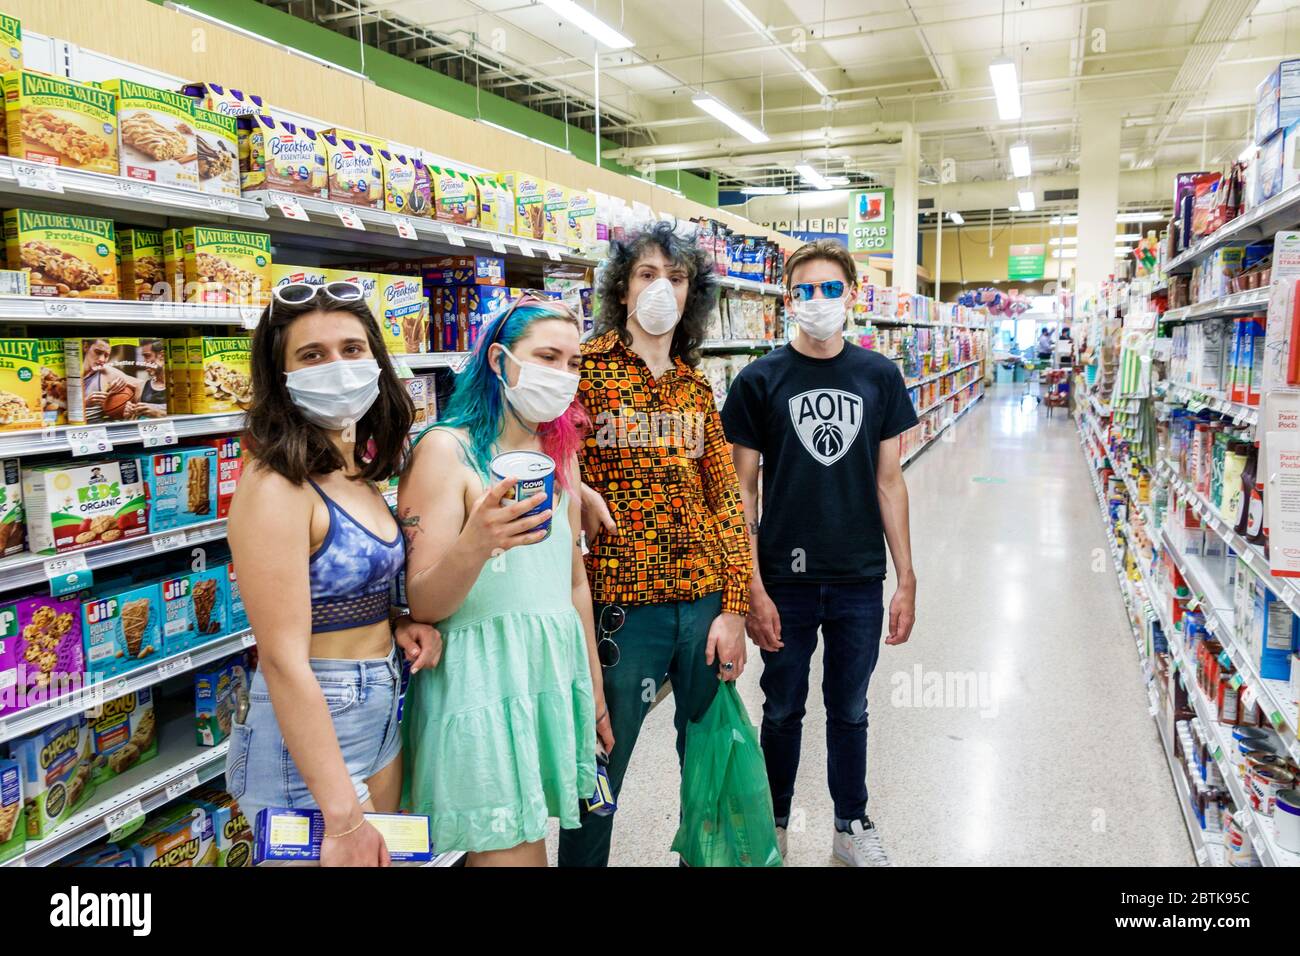 Miami Beach Florida, supermercado Publix tienda de comestibles, pasillo, enfermedad de crisis pandémica de coronavirus Covid-19, infección, prevención de enfermedades contagiosas, y Foto de stock